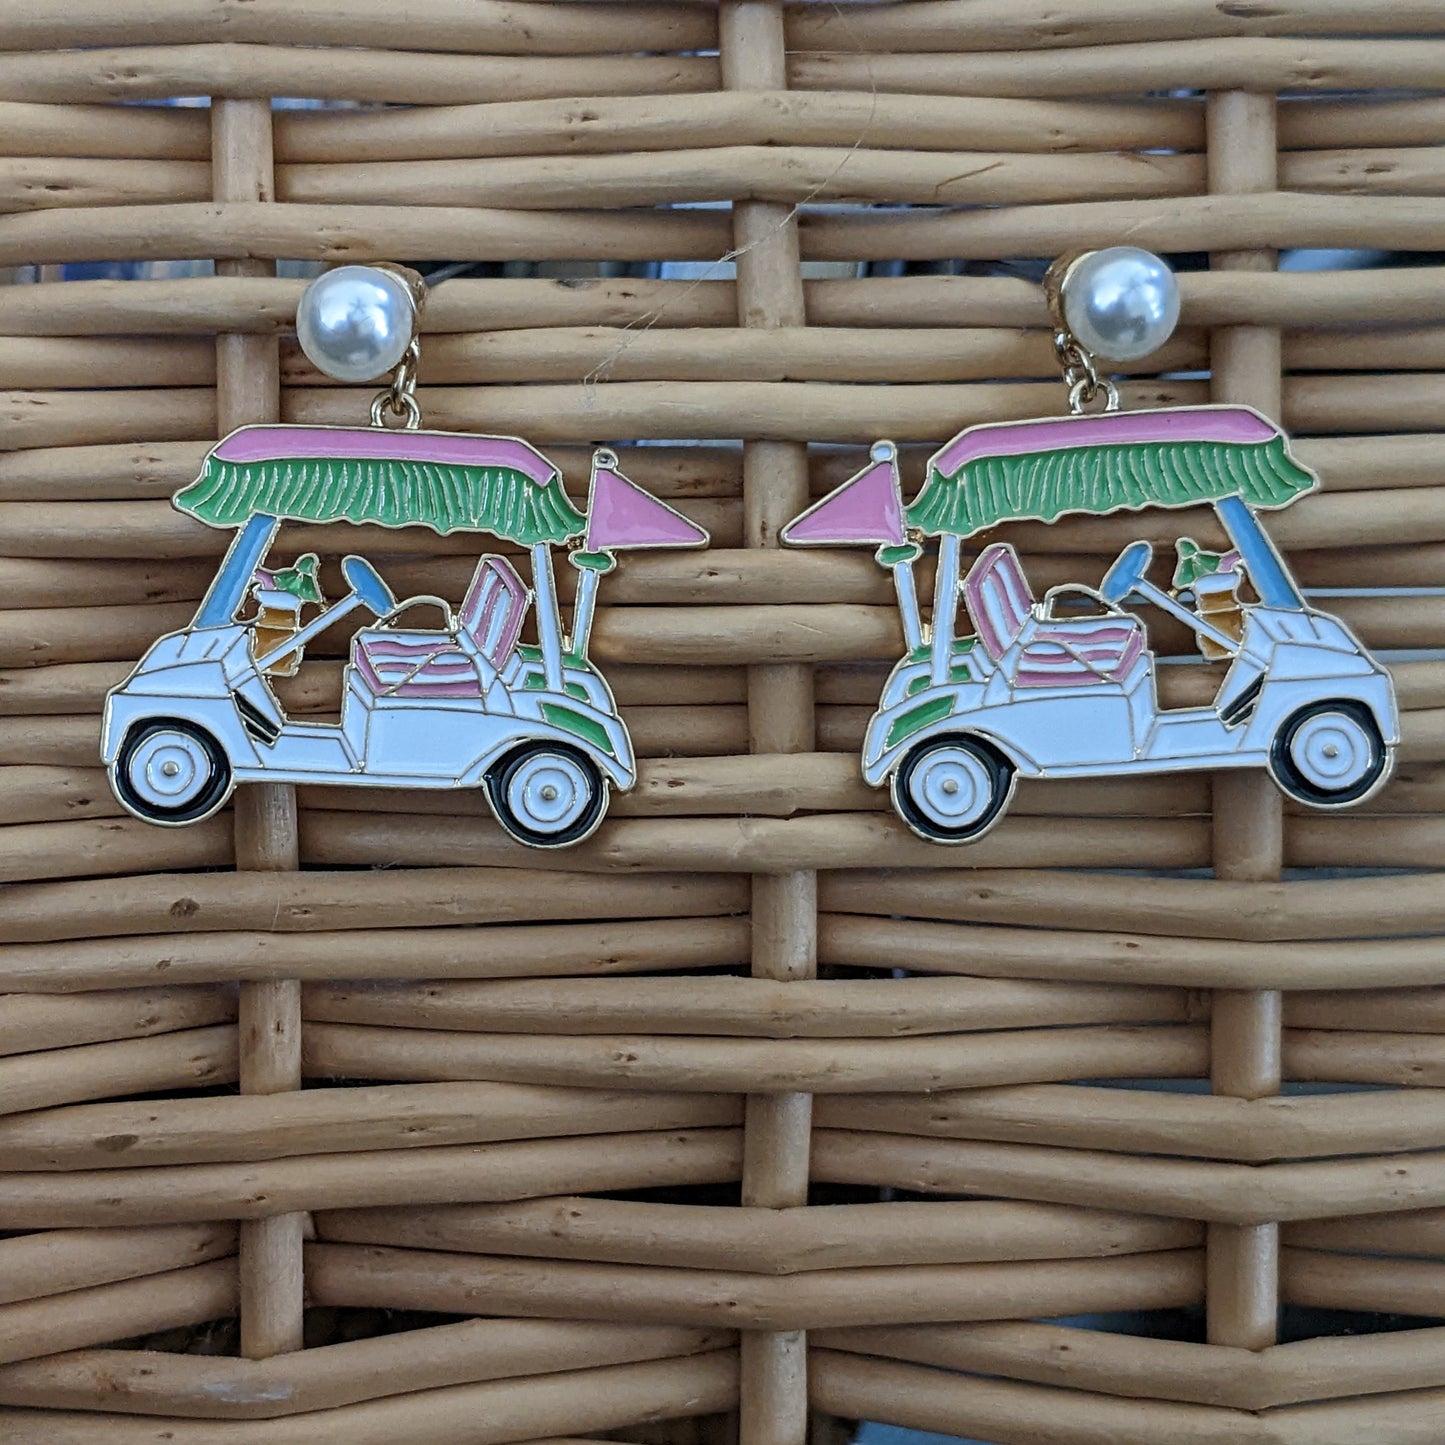 Bella Enamel Golf Cart Earrings in Green & Pink